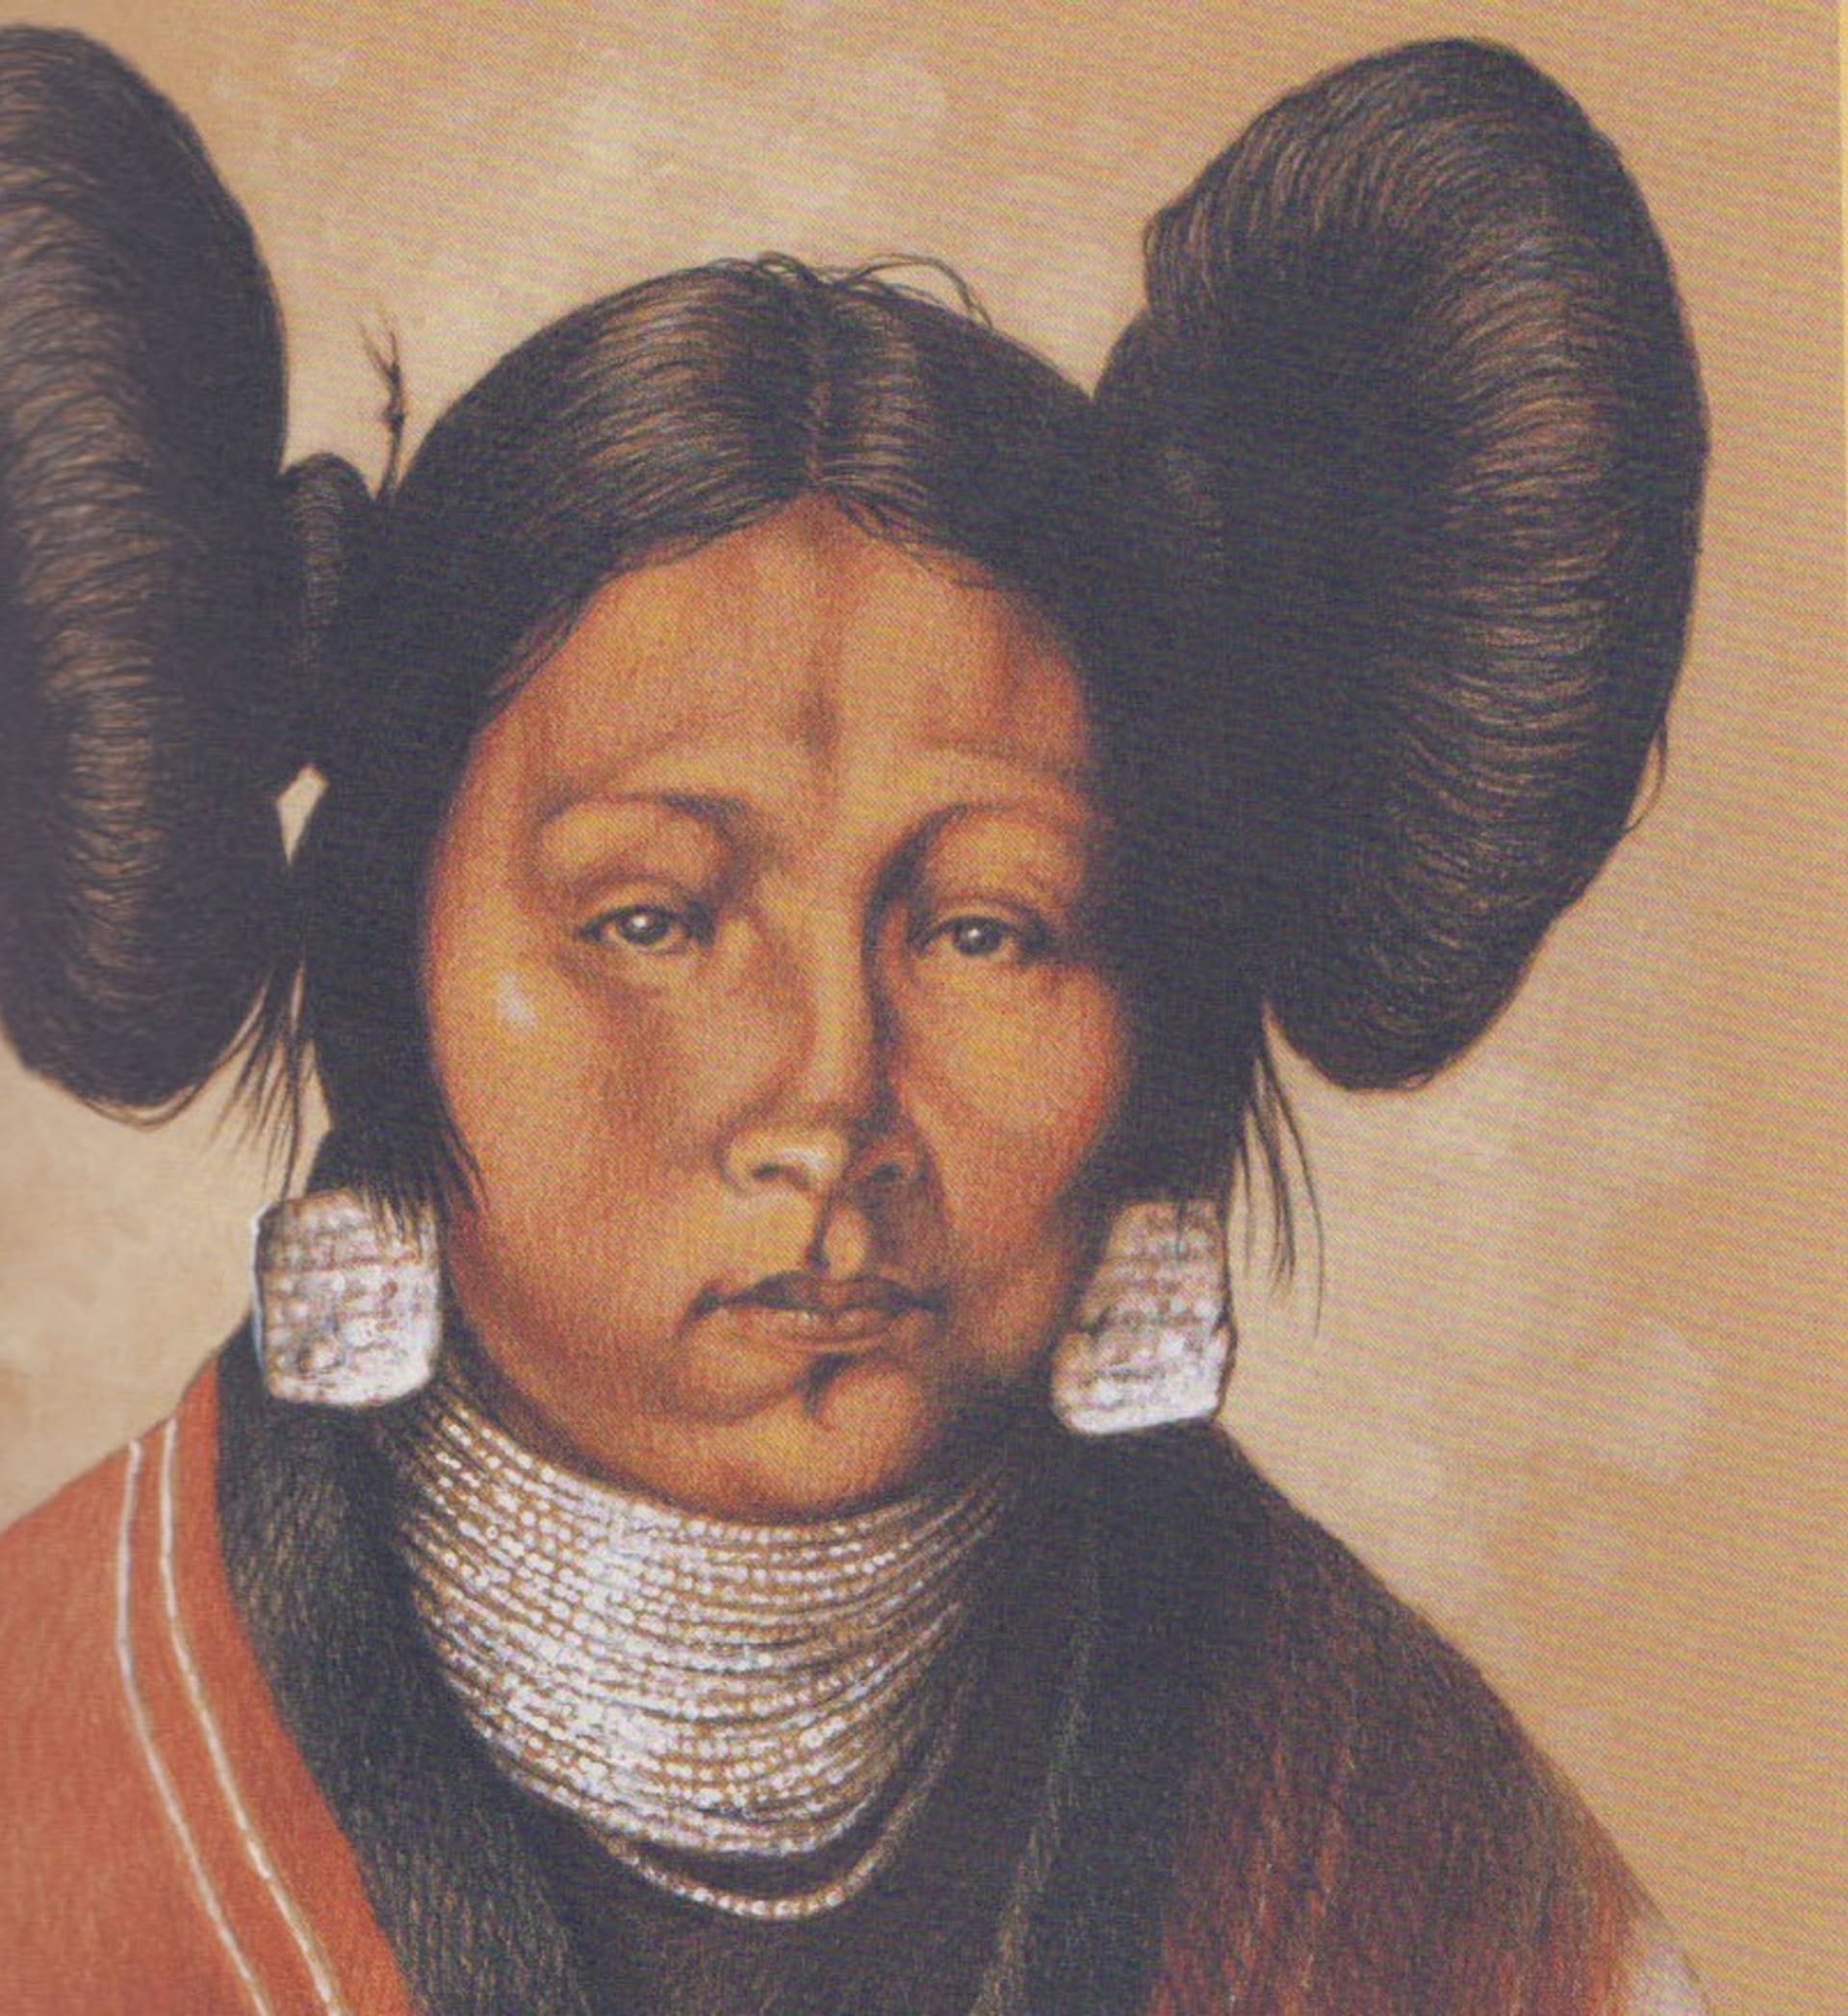 Mladá indiánka kmene Hopi podle ilustrace Lubomíra Kupčíka